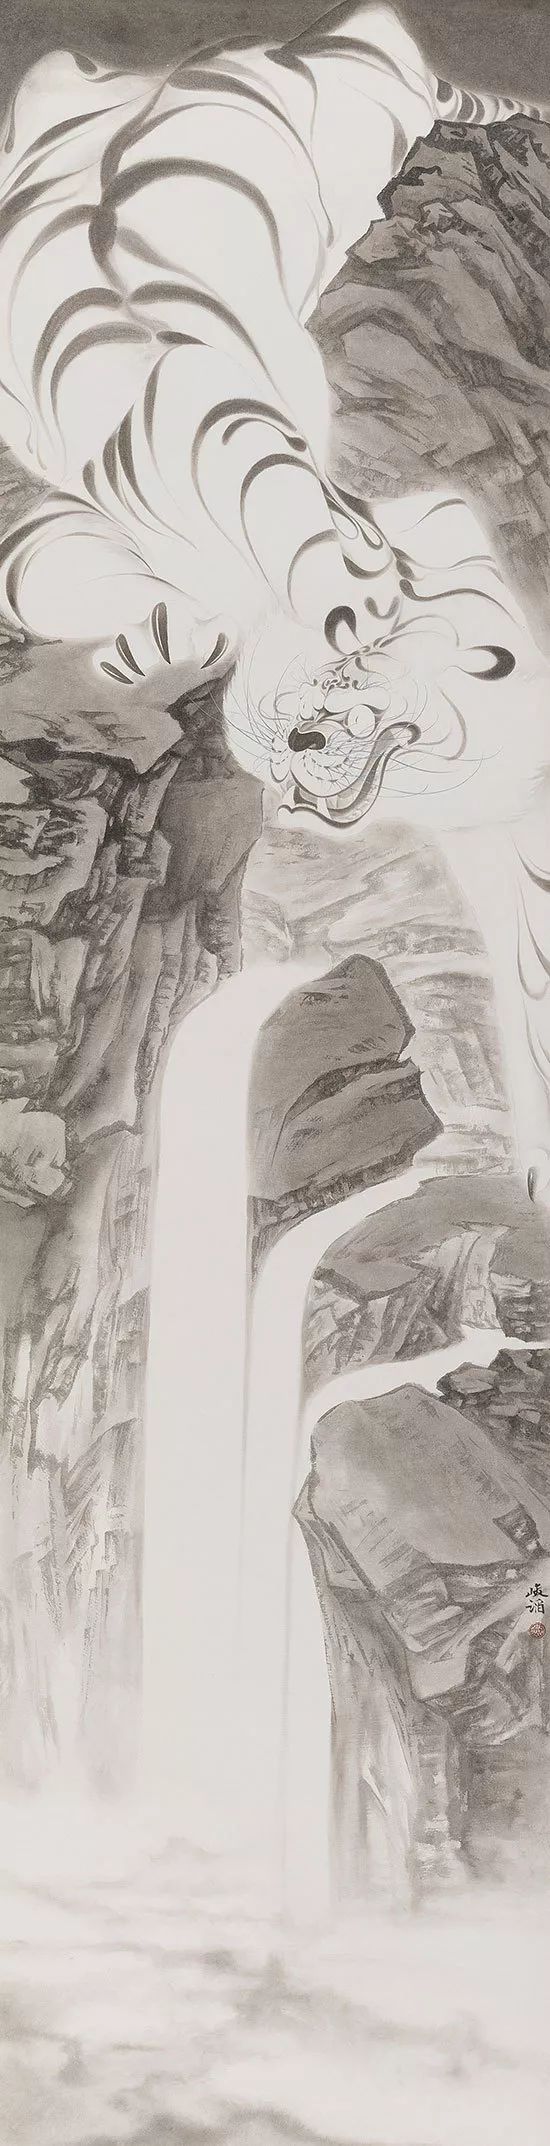 墨斗鱼2017年度新锐艺术家大赛中张峻滔的获奖作品：《空谷莫狂》 纸本水墨 50×240cm